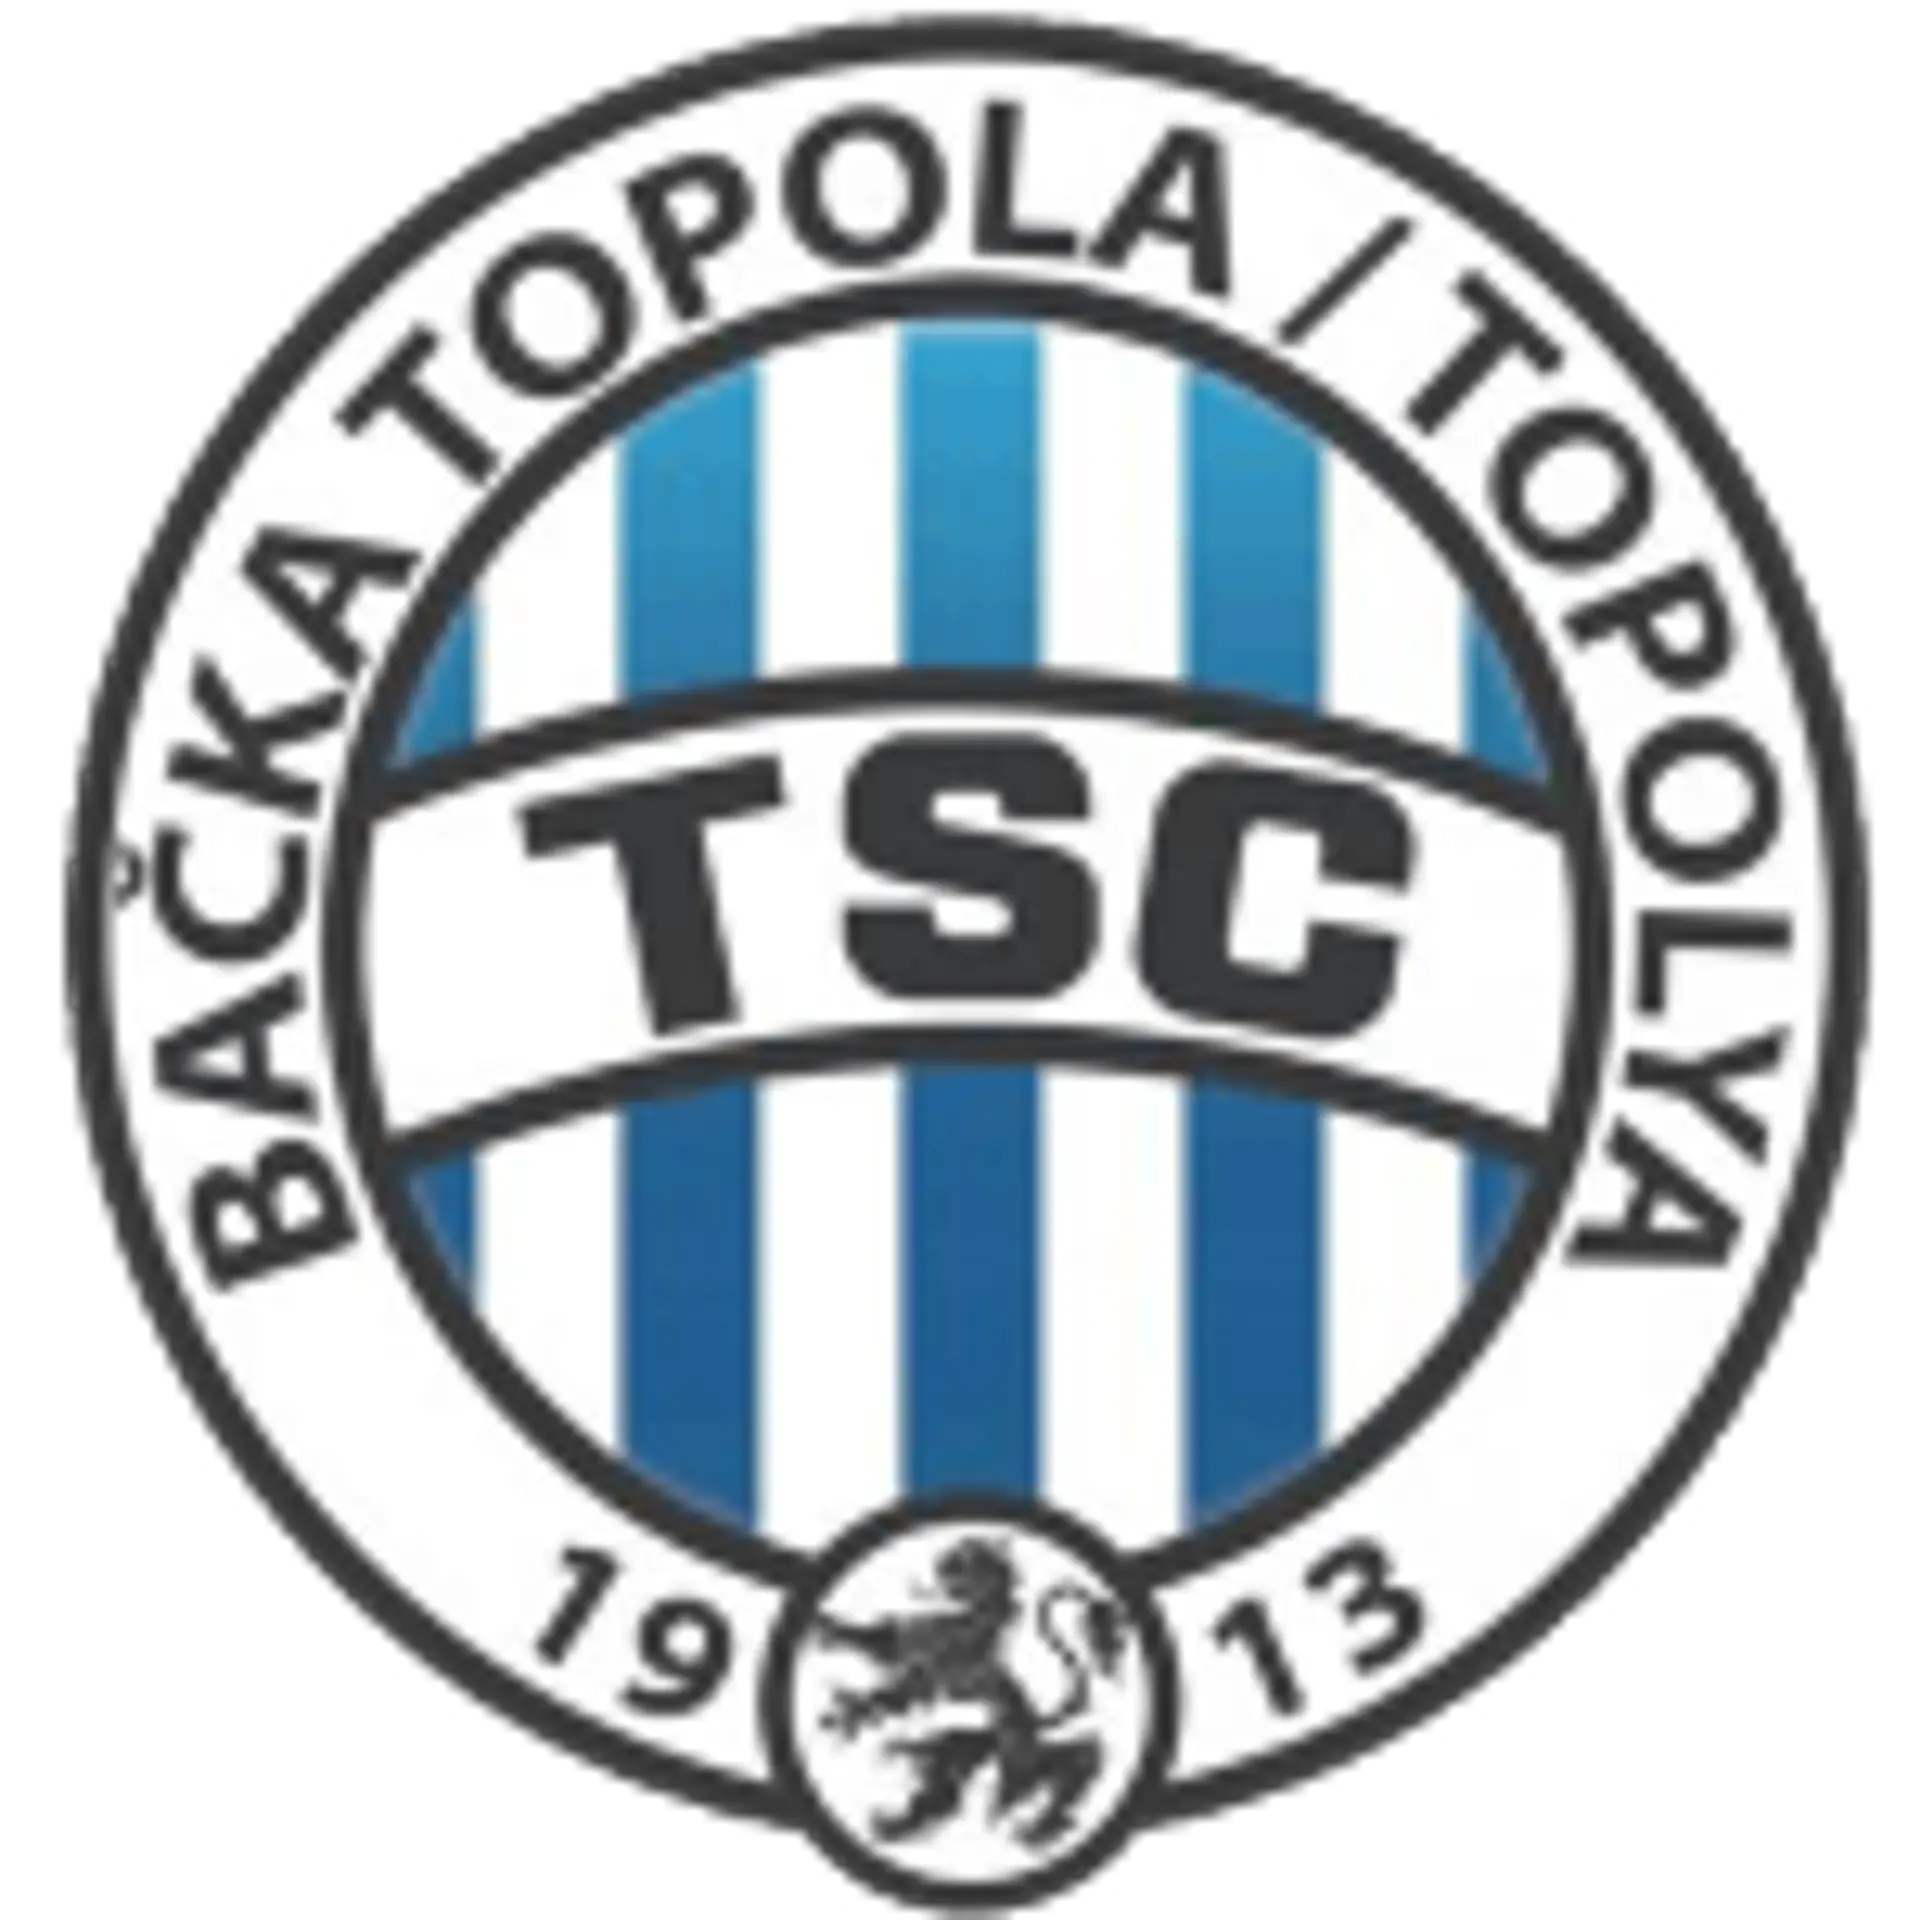 FK Radnicki Nis 0-3 FK AIK Bačka Topola :: Resumenes :: Vídeos